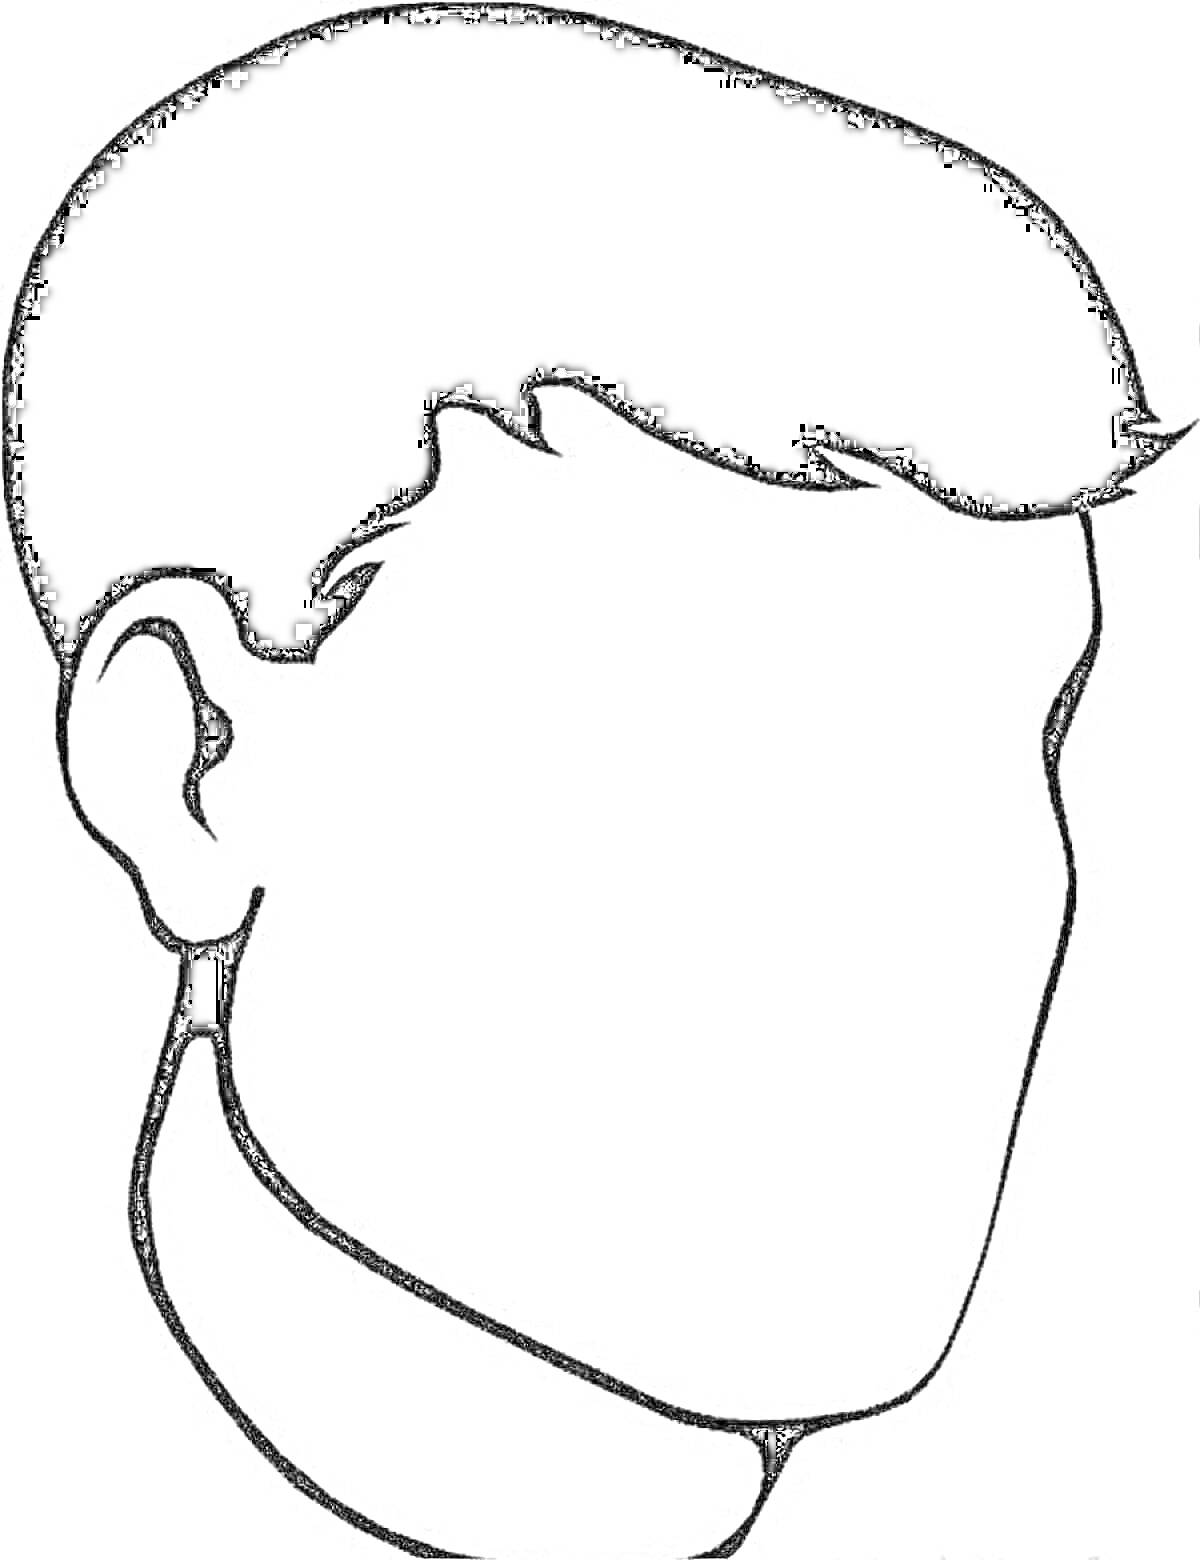 Раскраска Силуэт головы человека с короткими волосами, отсутствуют детали лица